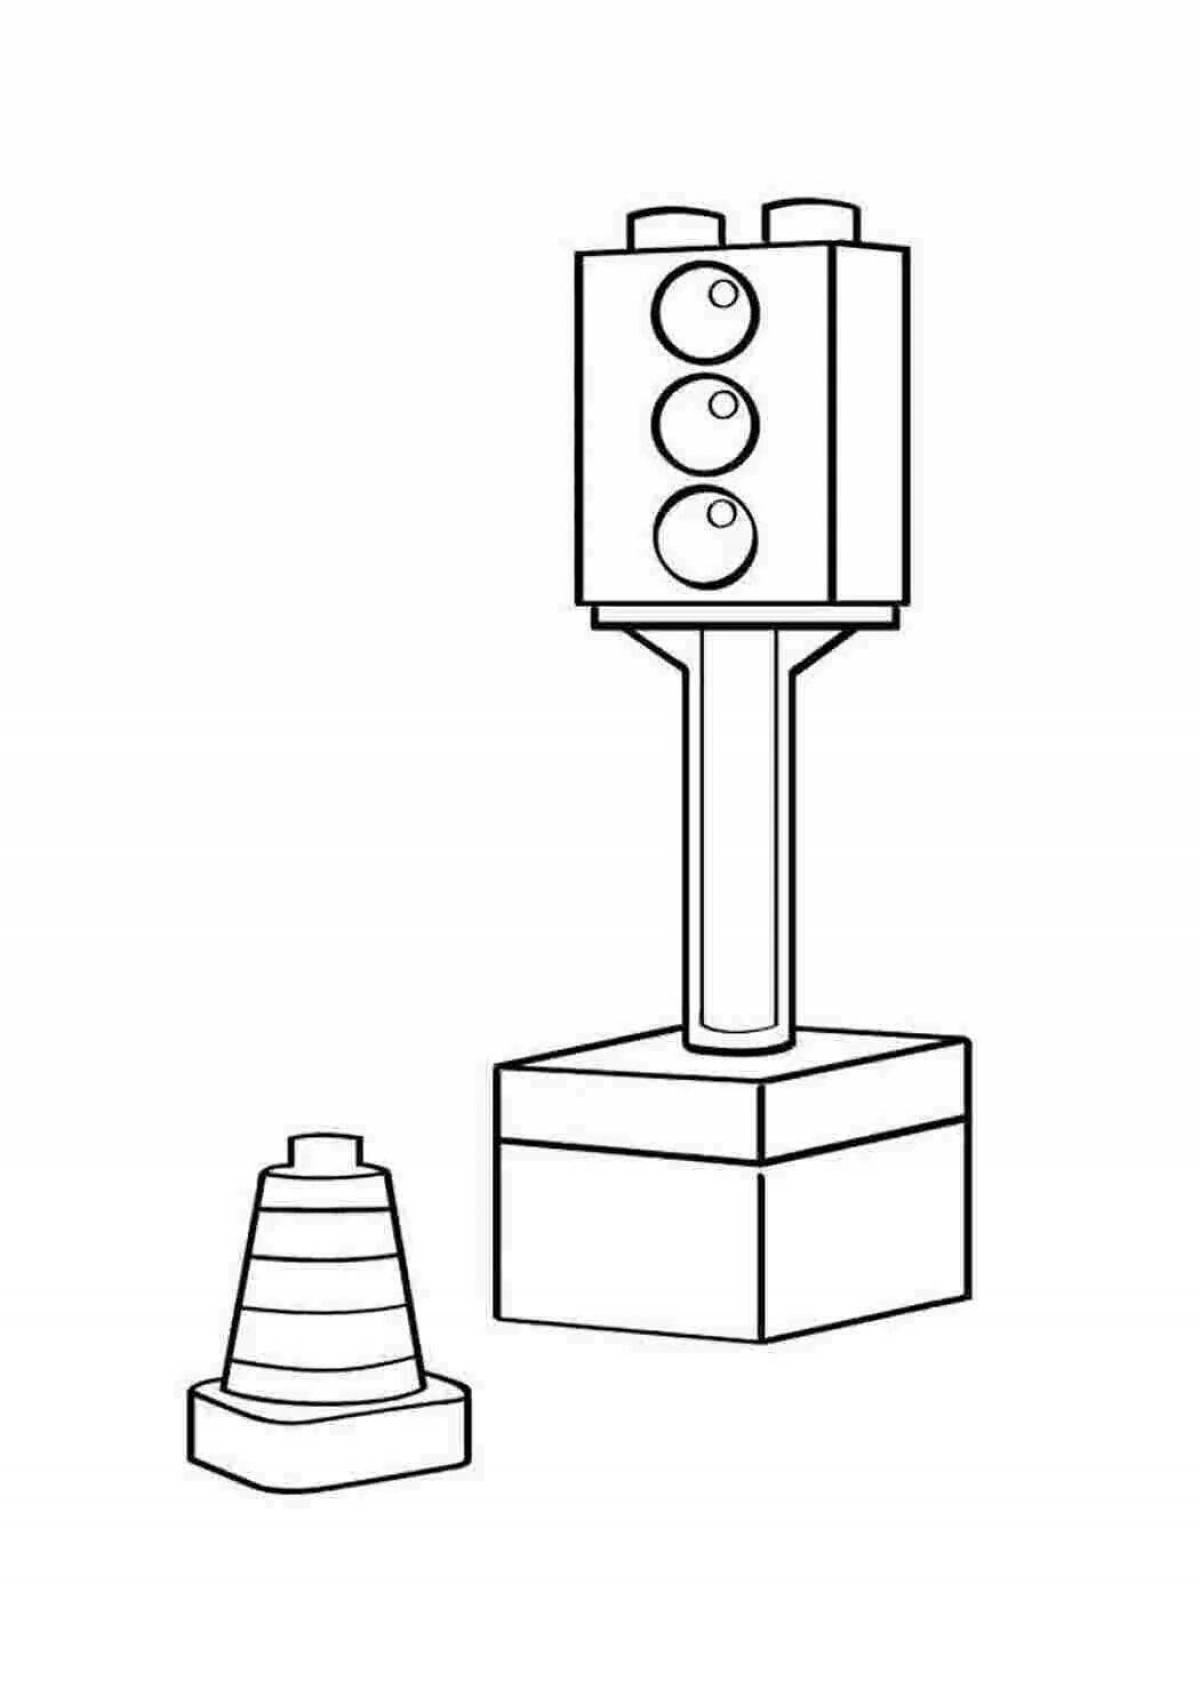 Joyful traffic light drawing